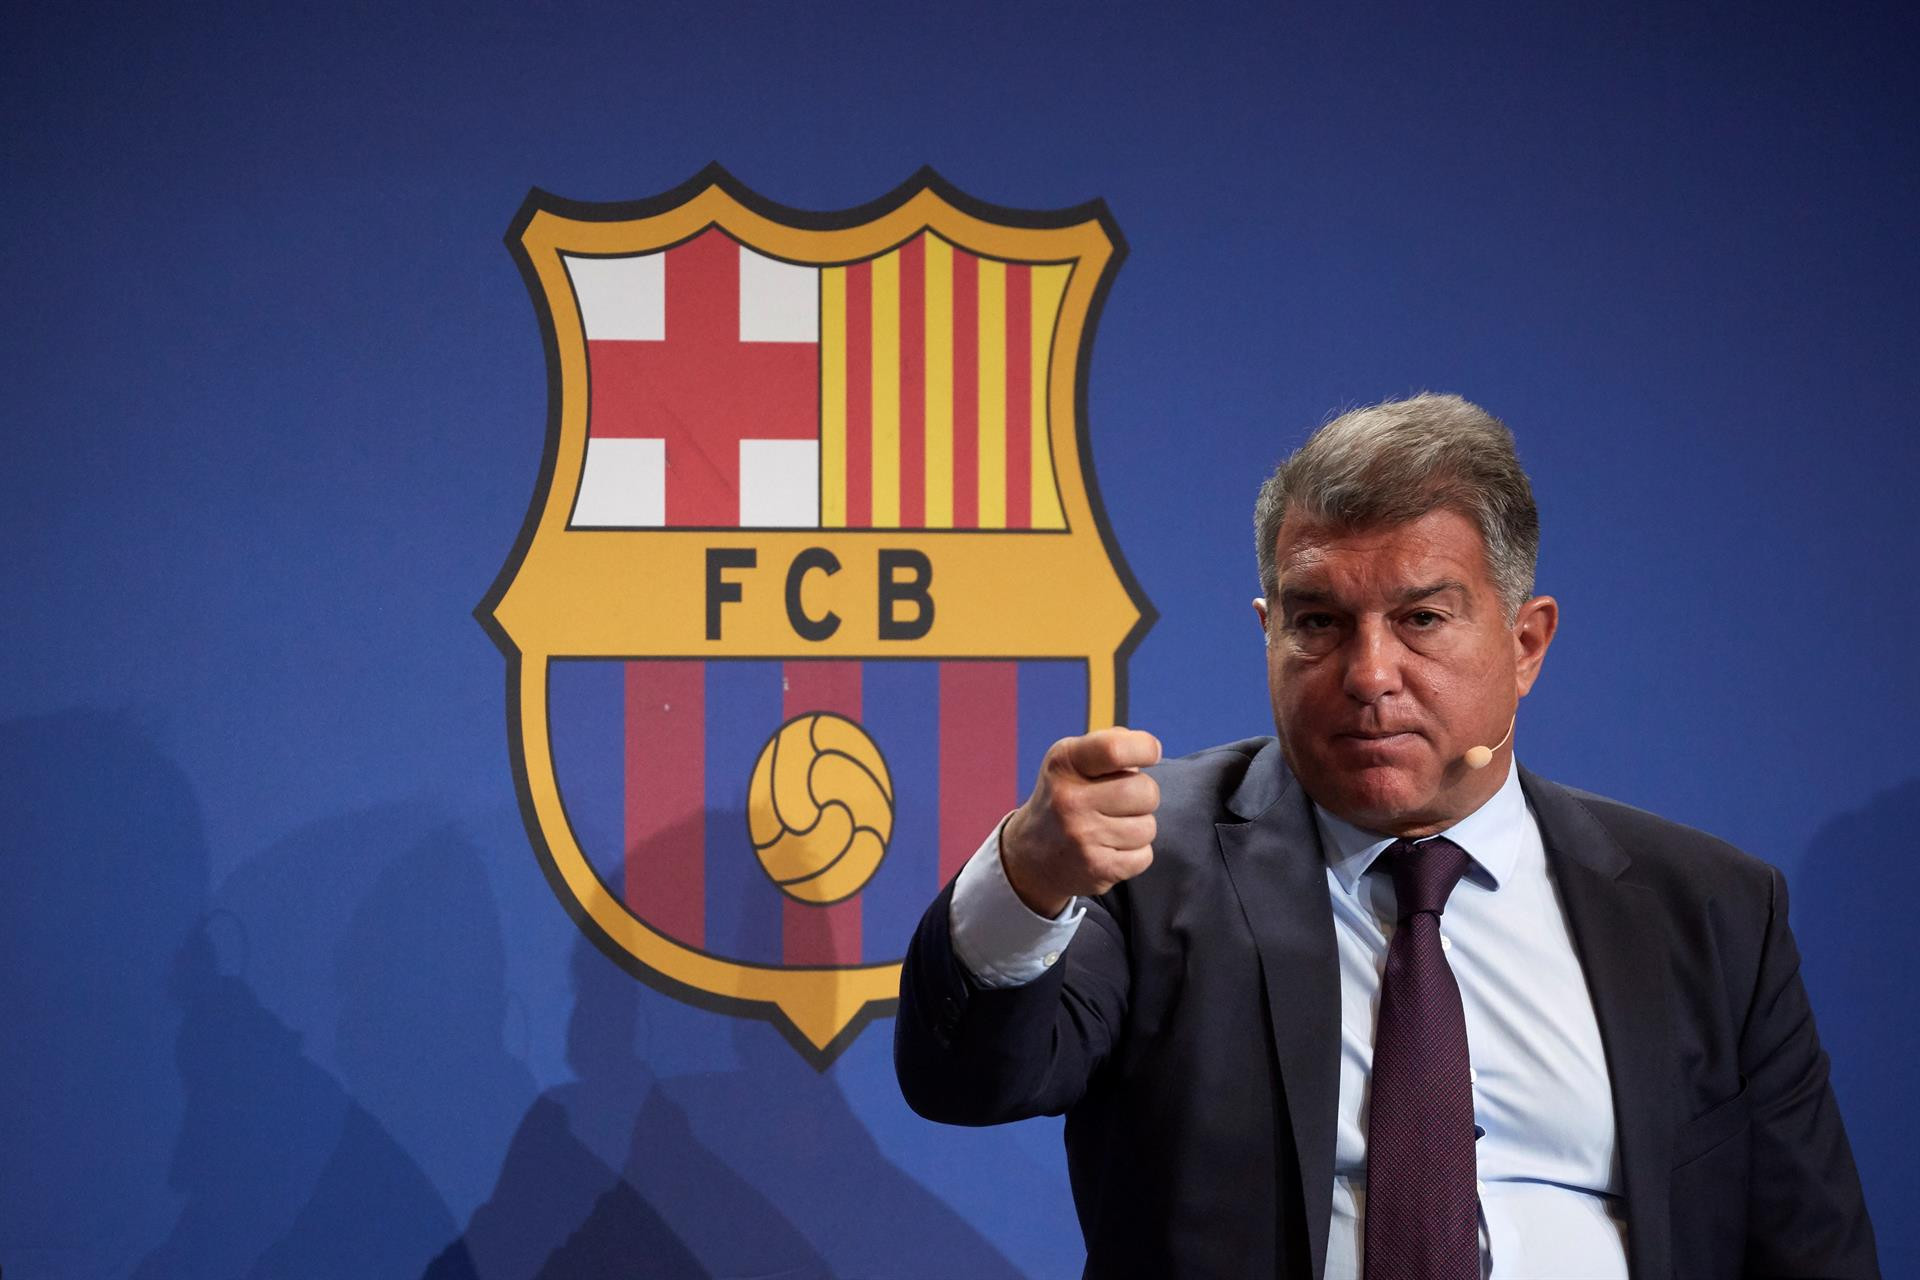 El presidente del Barça, Joan Laporta, acusa a Bartomeu de dilapidar 30 millones de euros / EFE